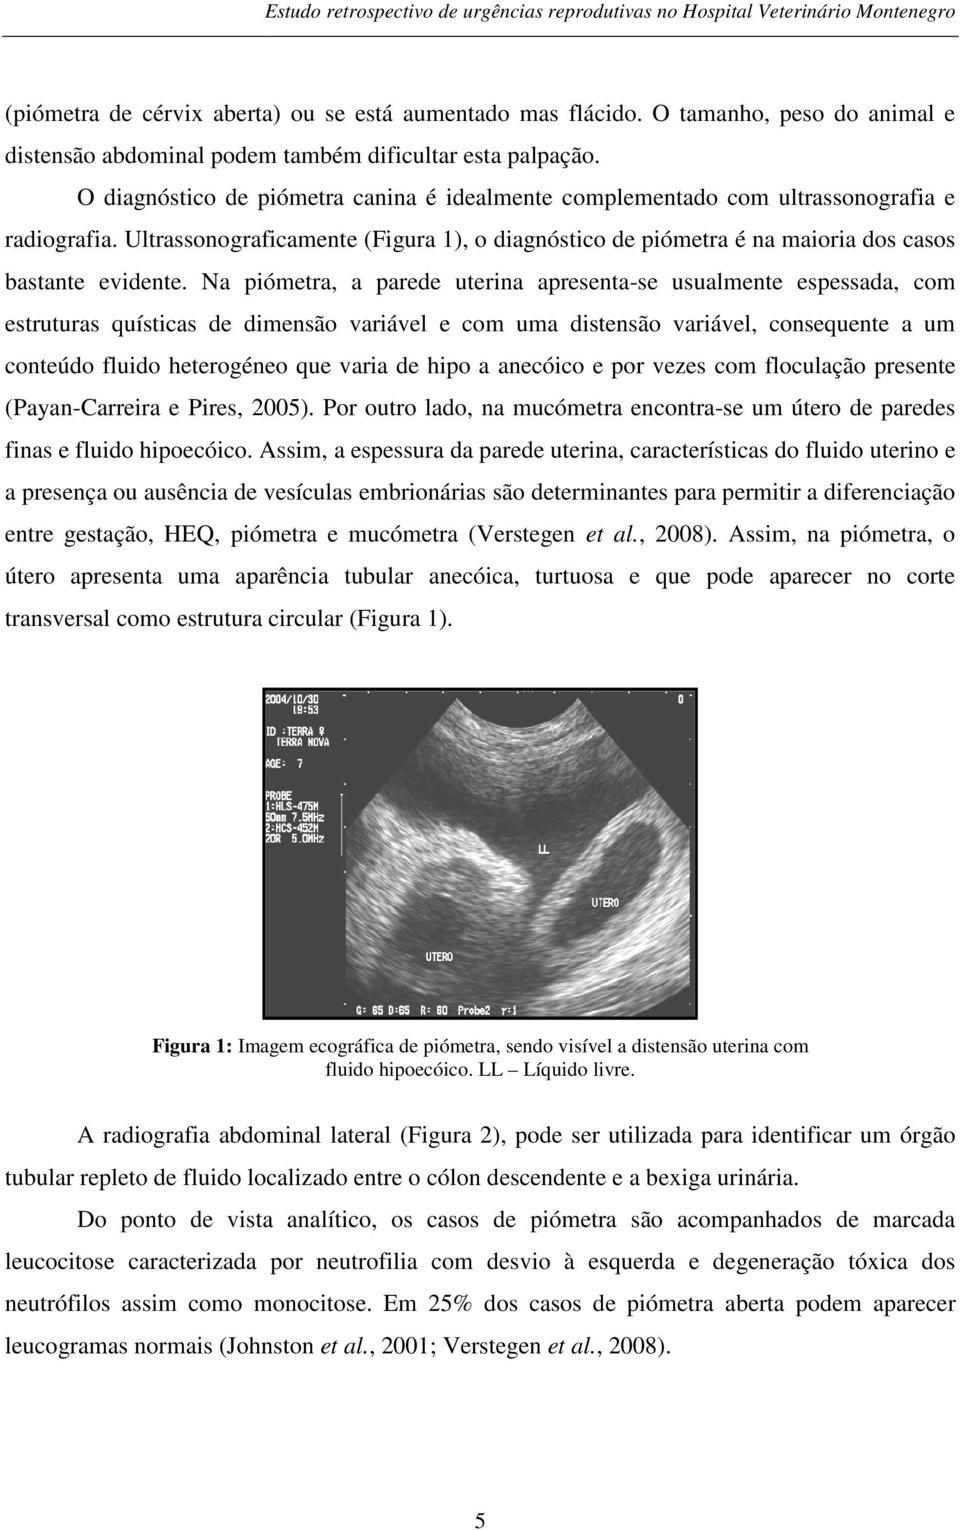 Na piómetra, a parede uterina apresenta-se usualmente espessada, com estruturas quísticas de dimensão variável e com uma distensão variável, consequente a um conteúdo fluido heterogéneo que varia de